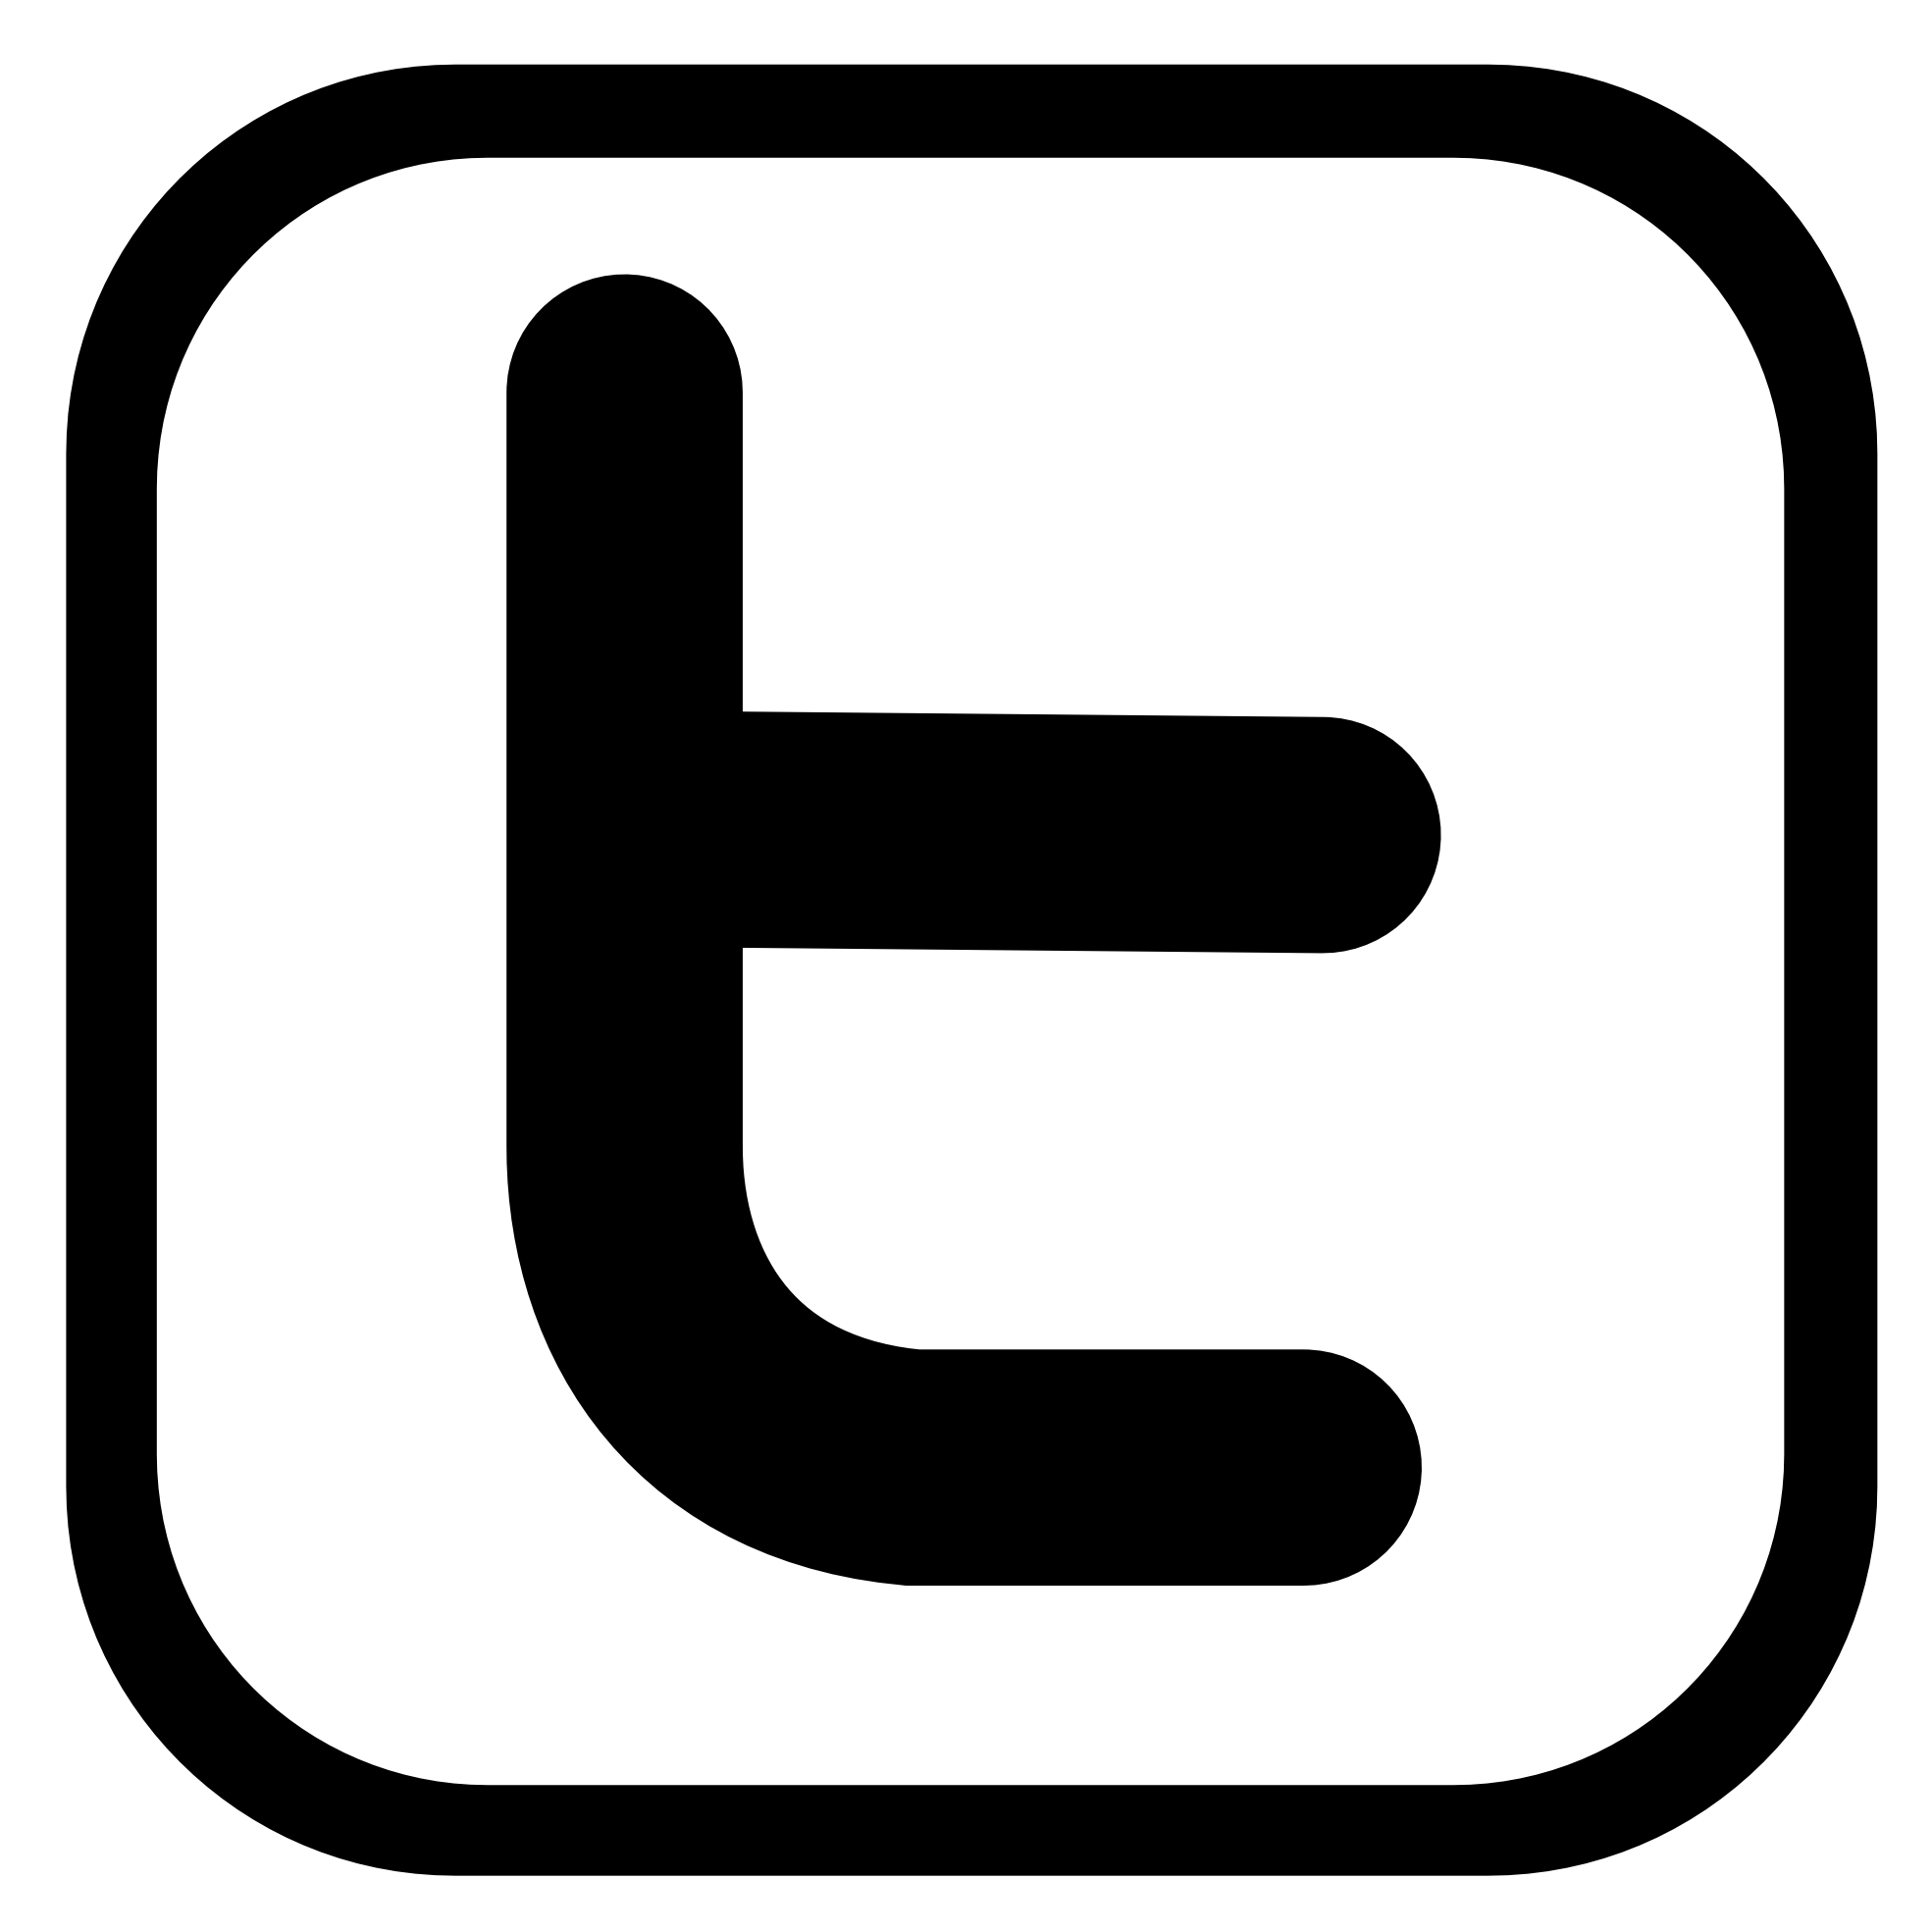 Black and White Twitter Logo Vector